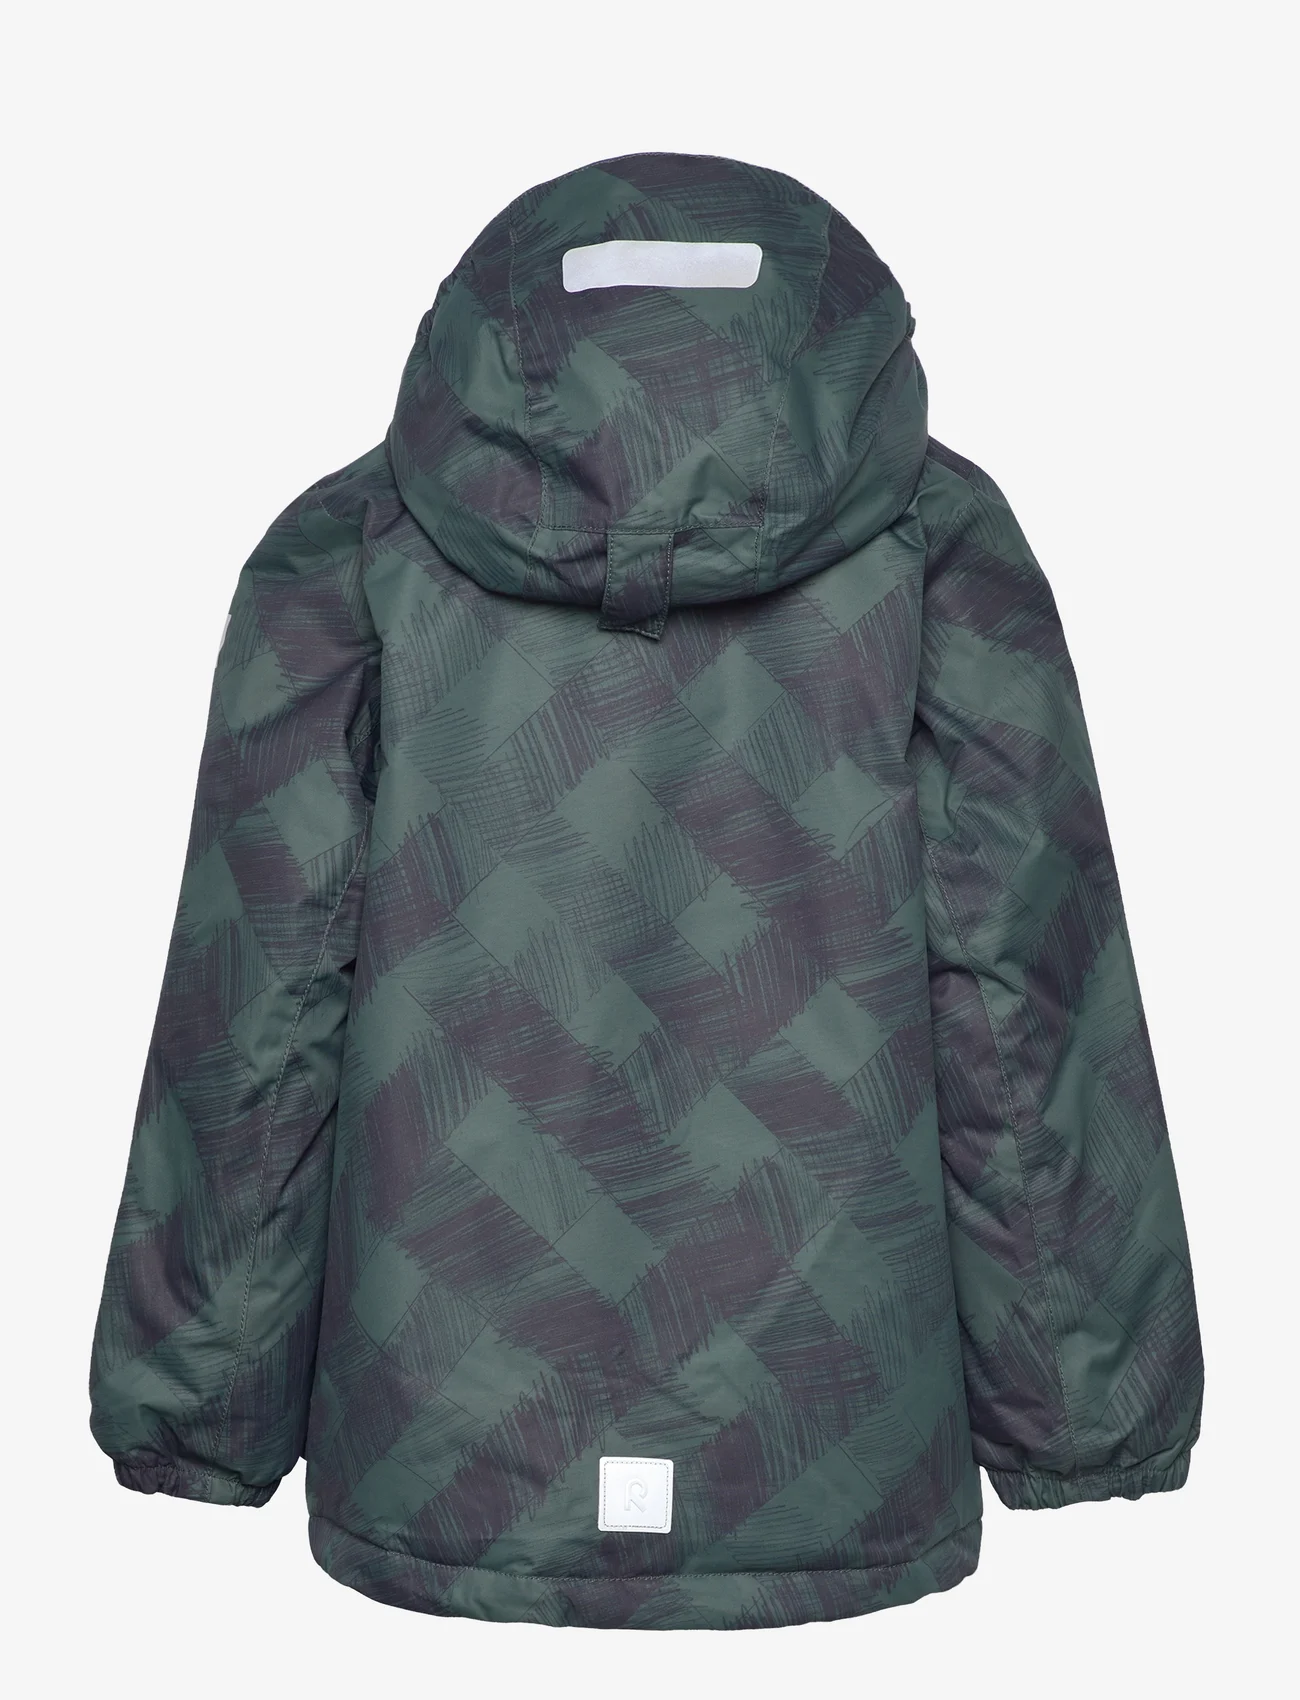 Reima - Winter jacket, Nuotio - Žieminės striukės - thyme green - 1